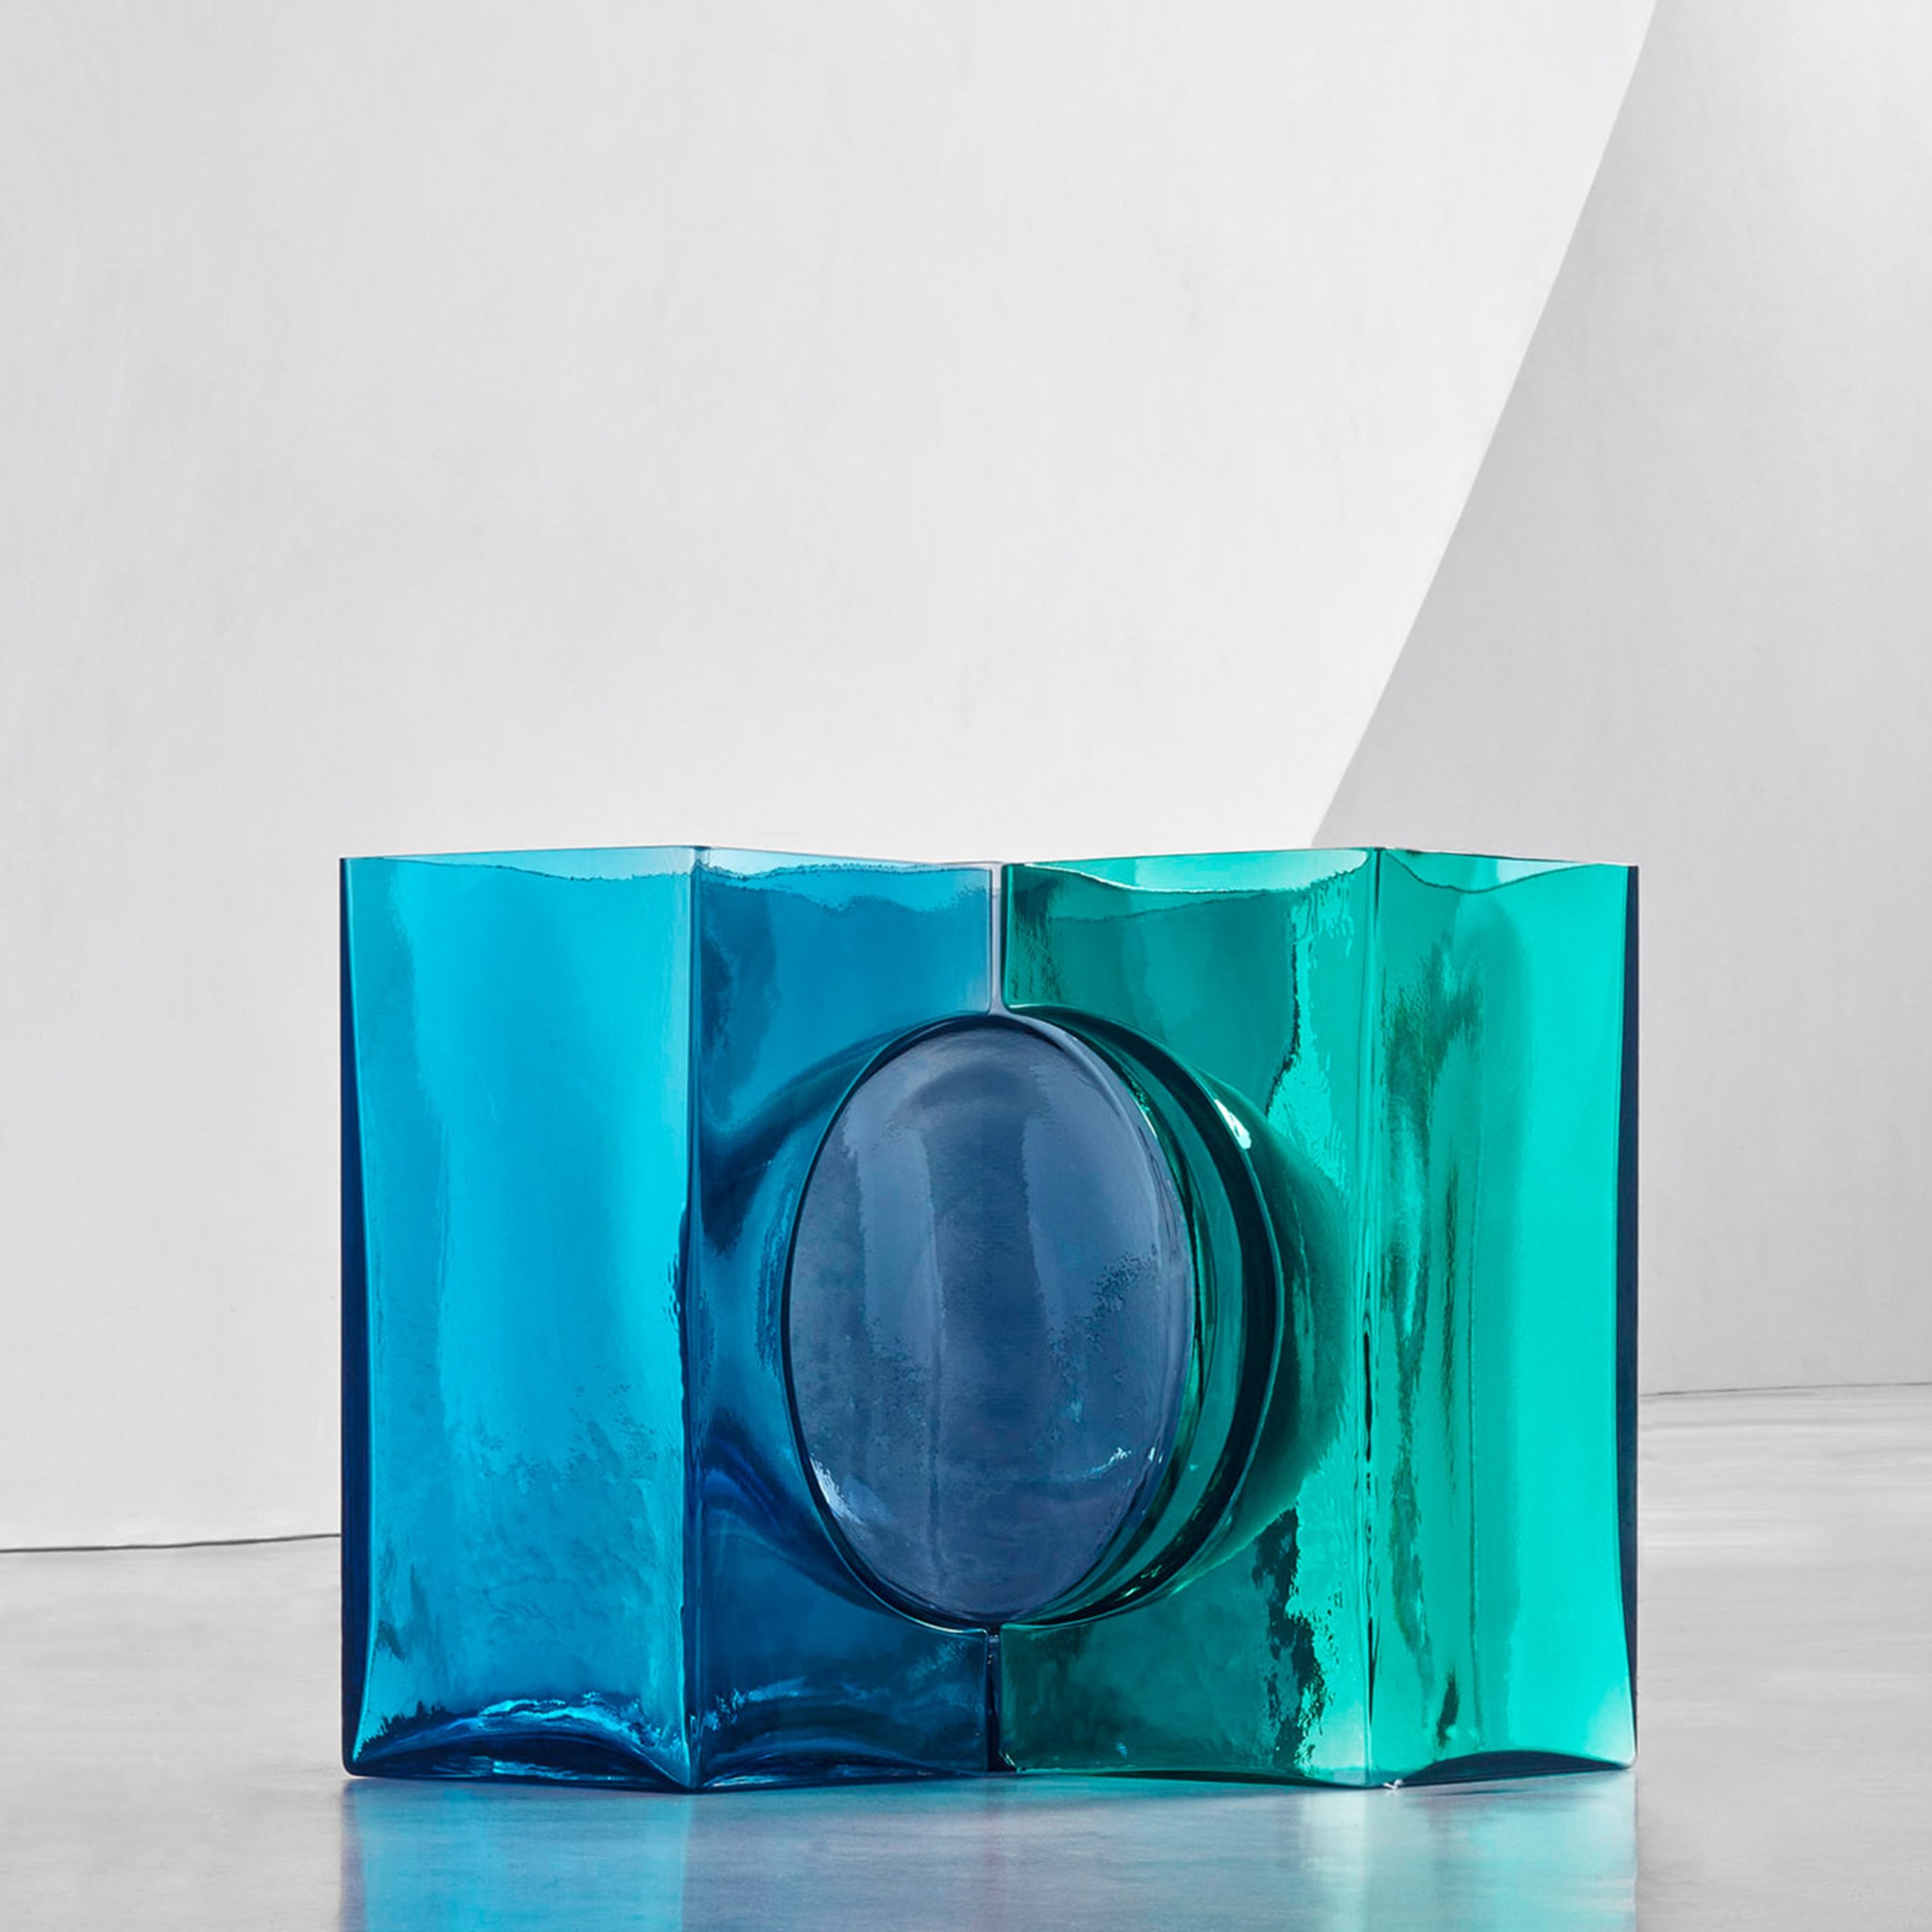 Ando Cosmos Aqua/Green Crystal Sculpture by Tadao Ando - Vue alternative 1